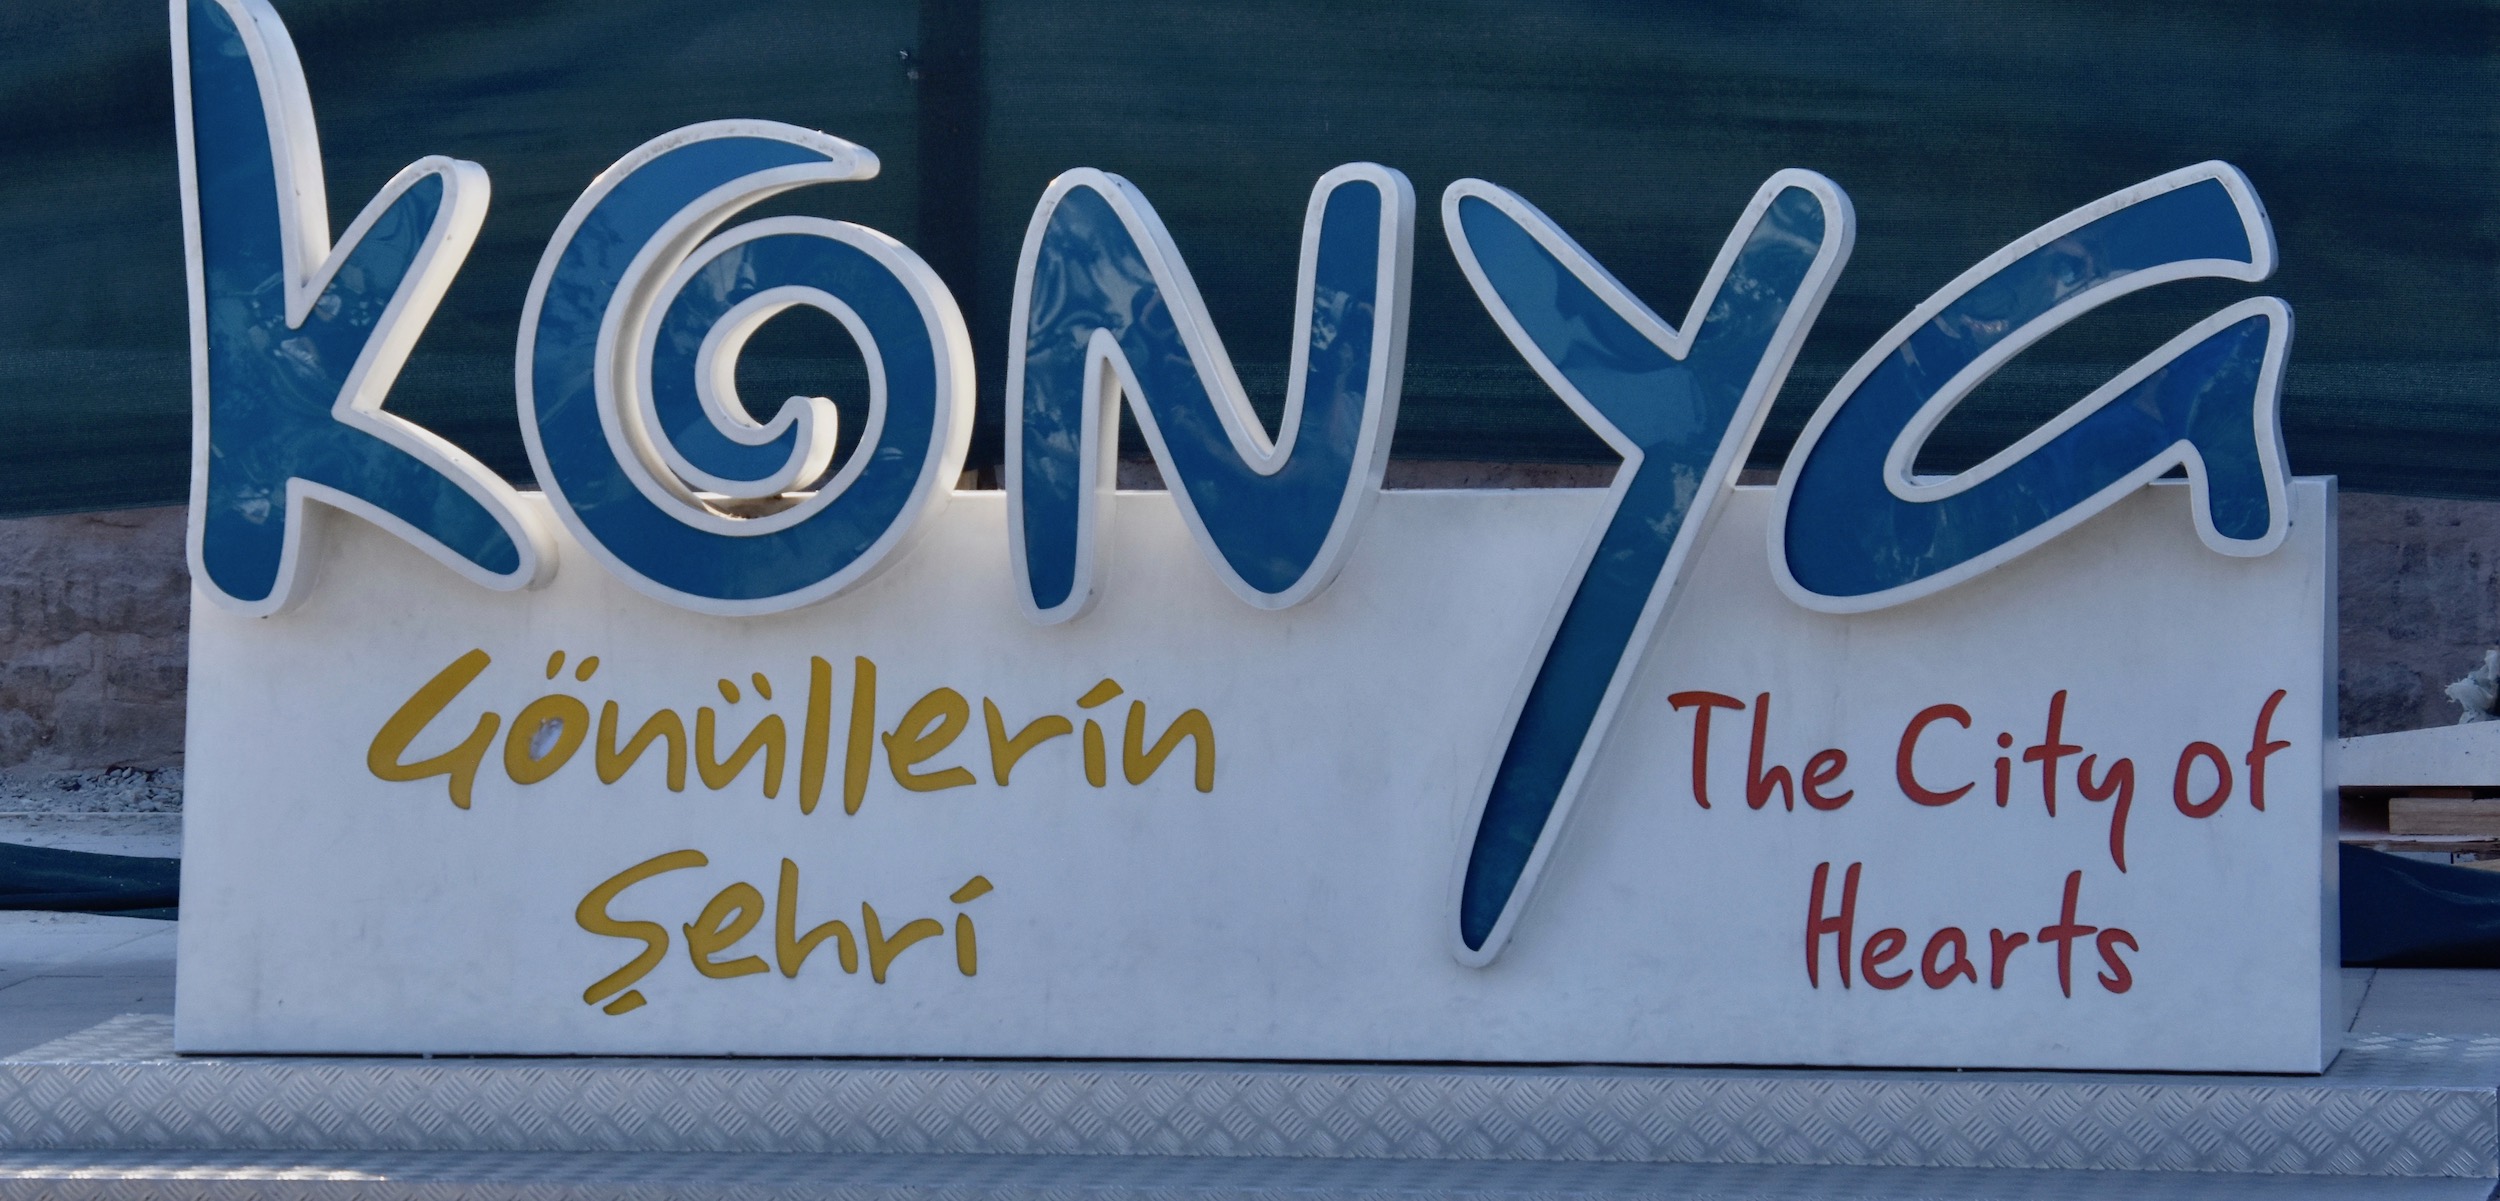 City of Hearts - Konya